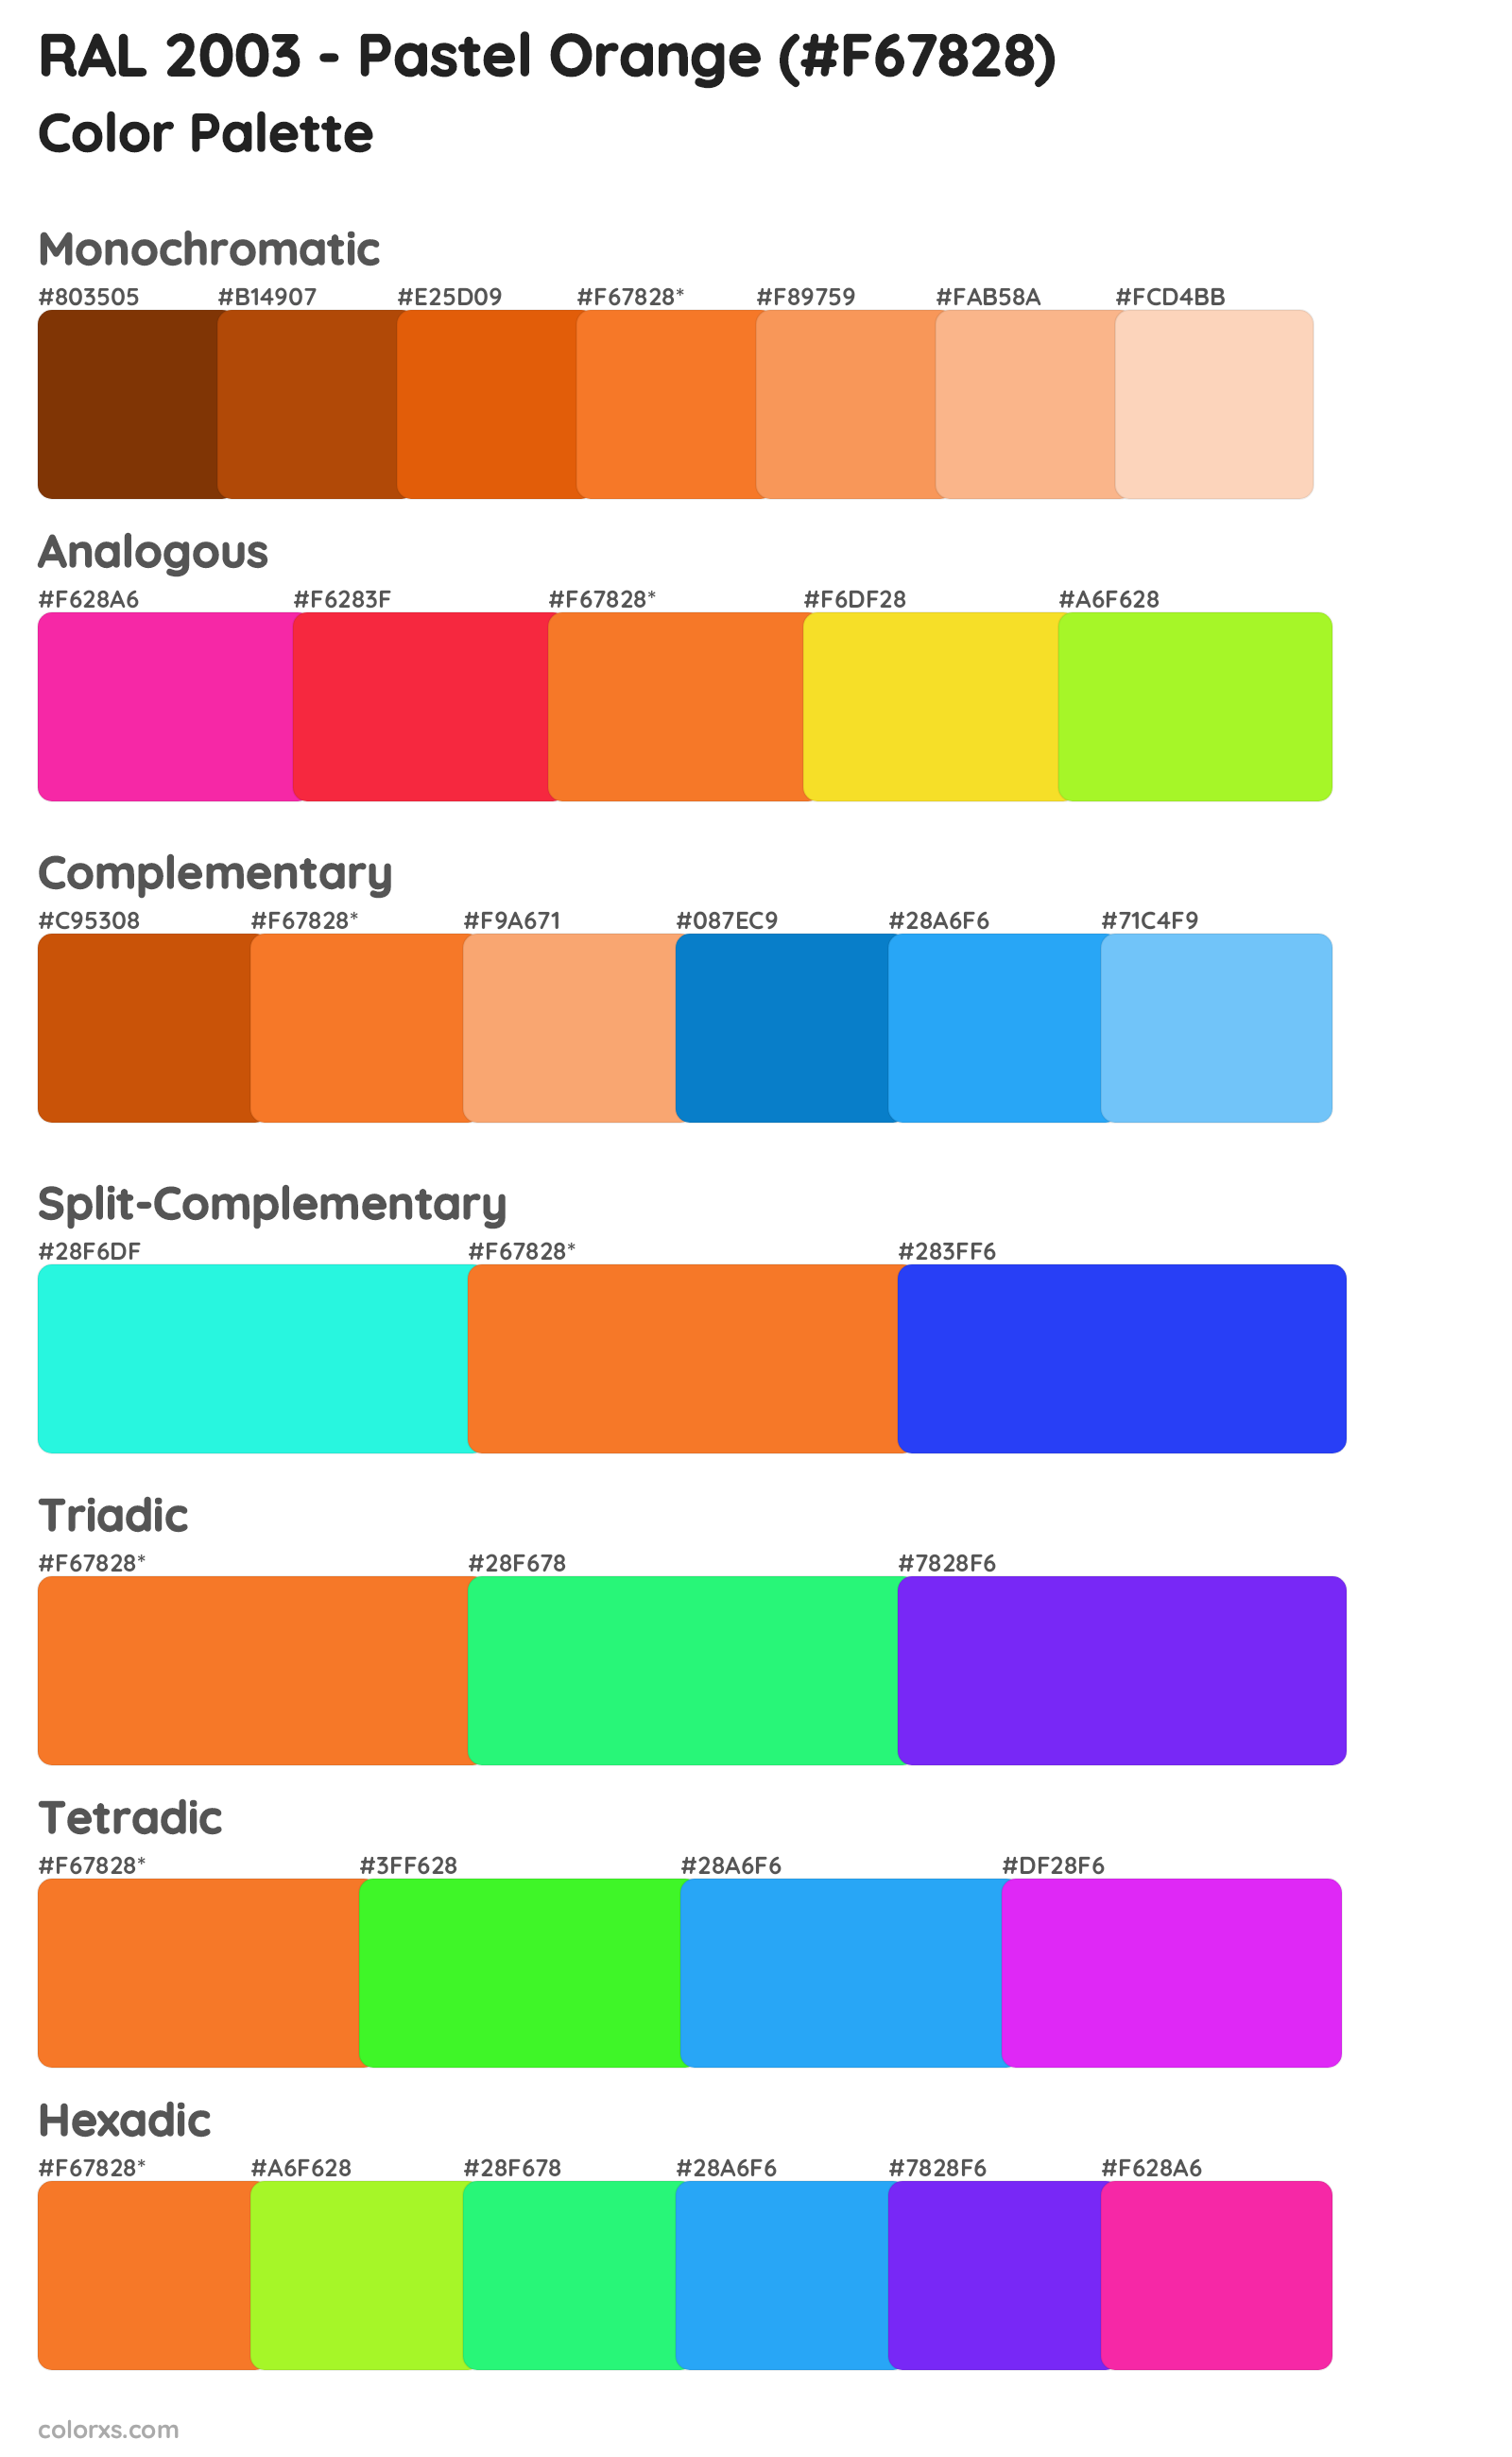 RAL 2003 - Pastel Orange Color Scheme Palettes